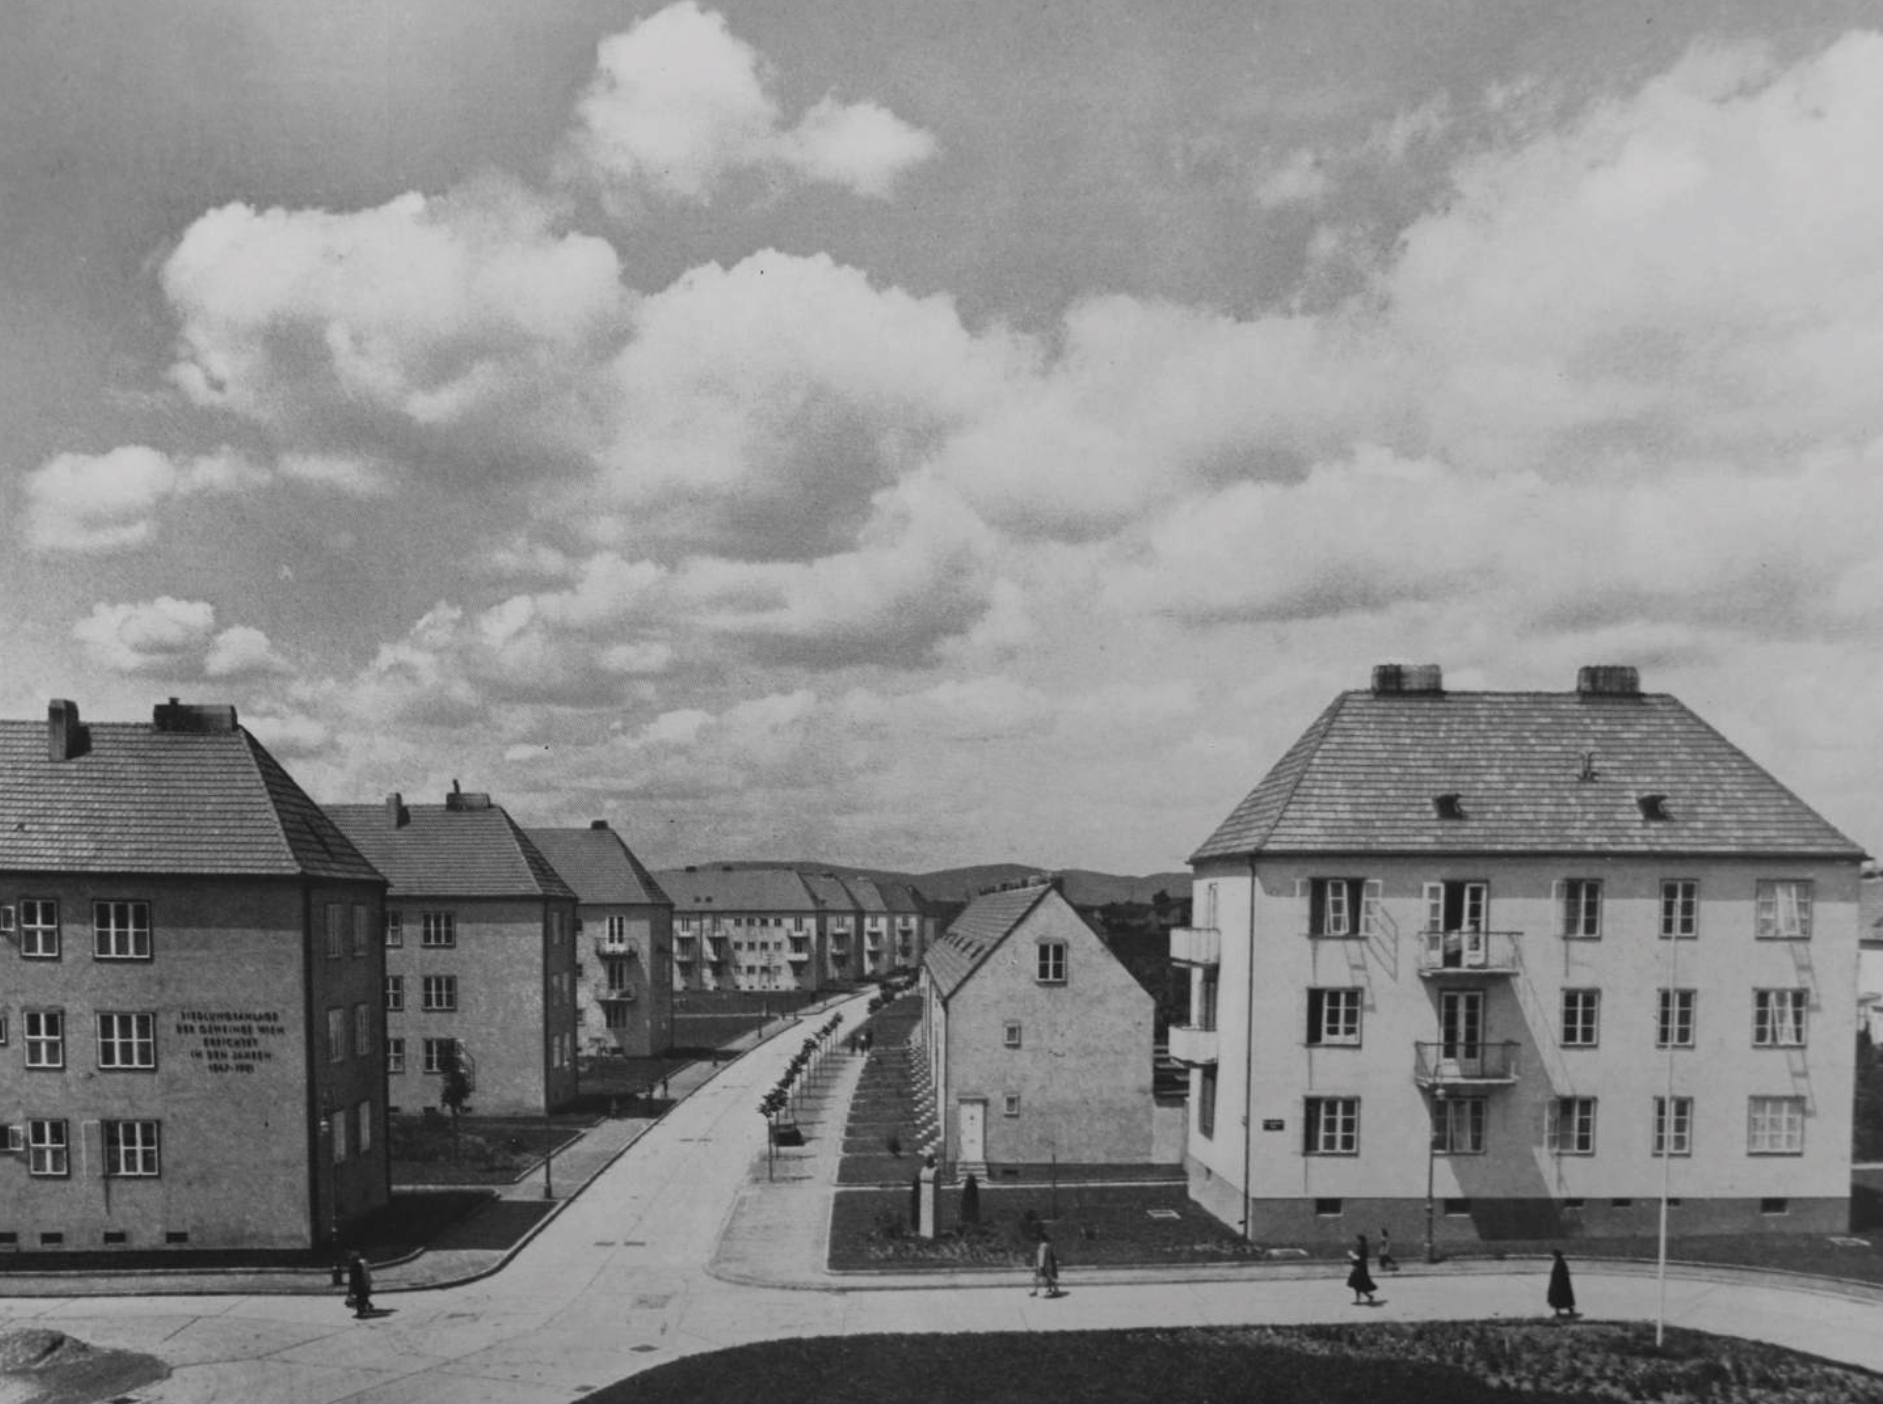 Der Wiener kommunale Wohnbau der Nachkriegszeit am Beispiel der Per-Albin-Hansson Siedlung West